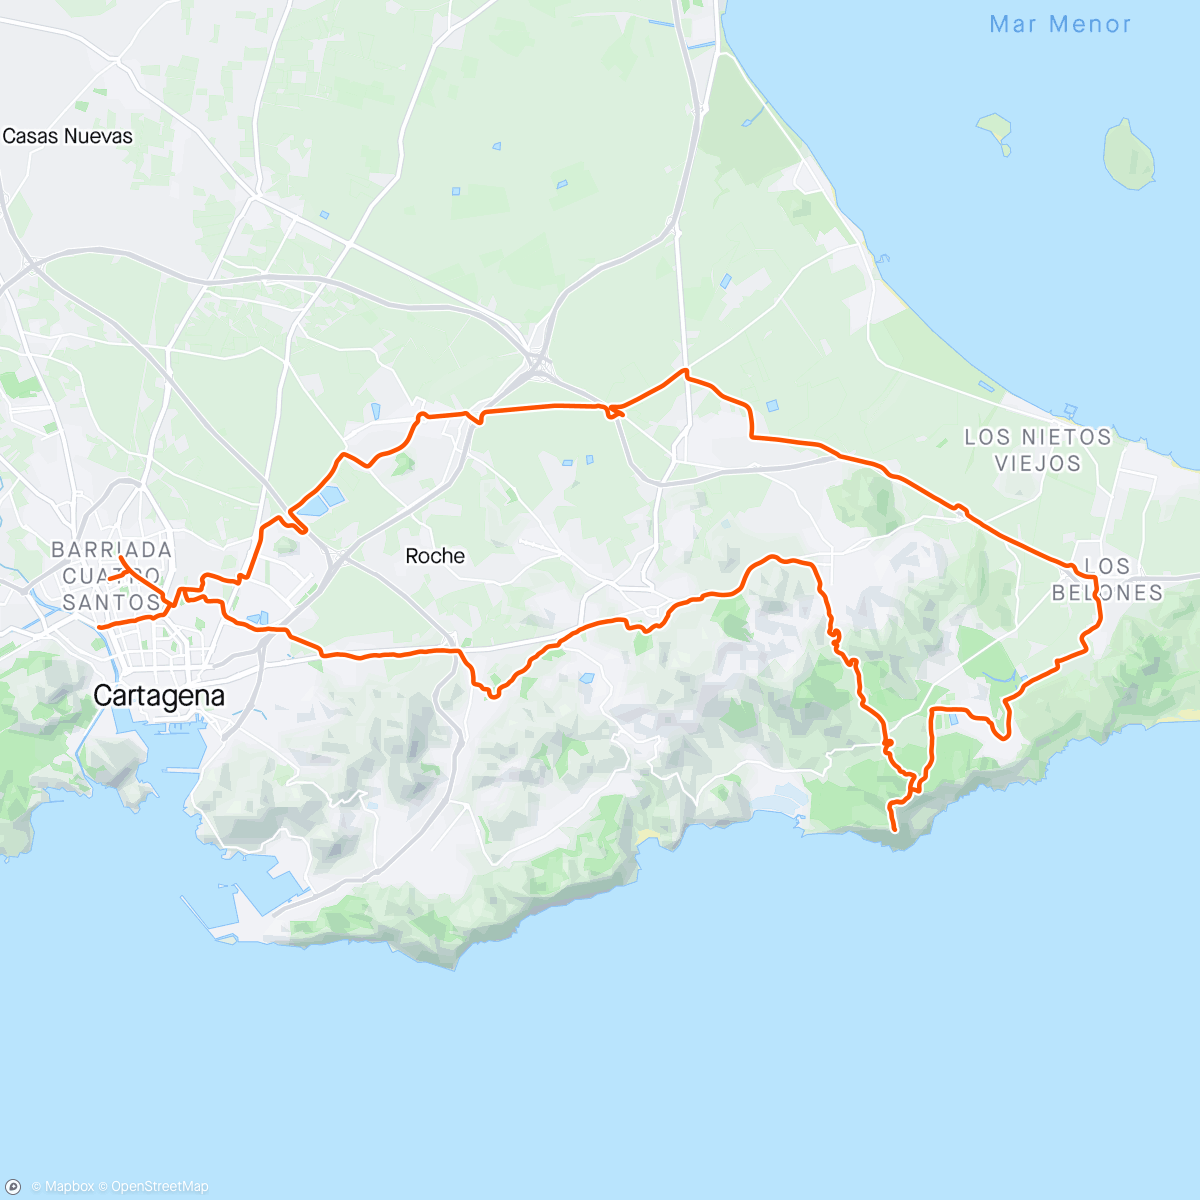 Map of the activity, Cartagena - Cenizas - Los Belones - Cartagena